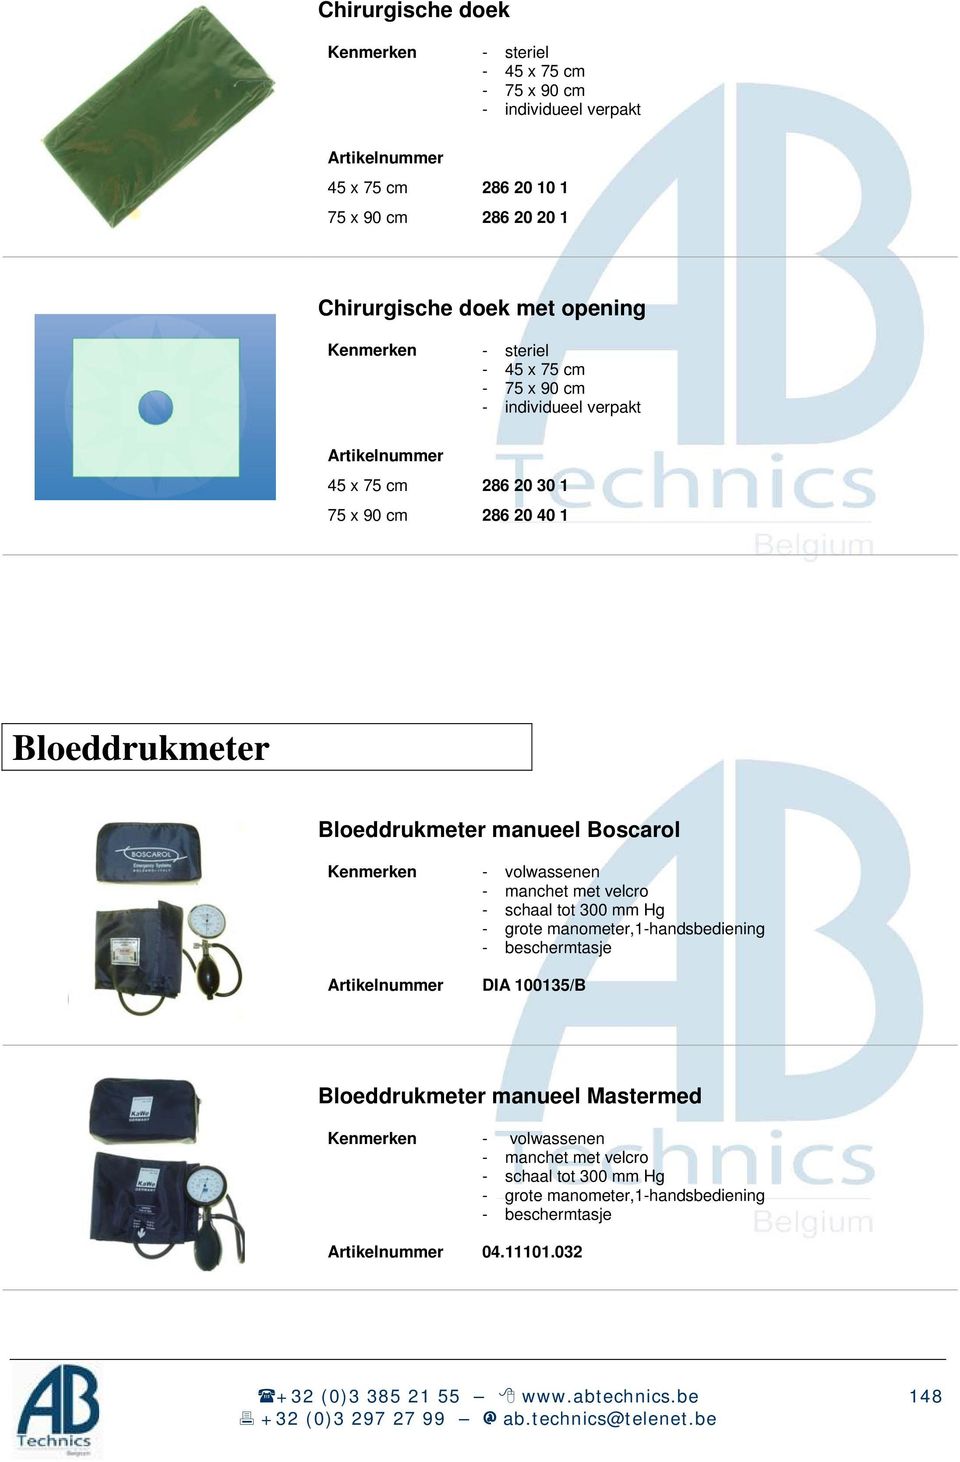 Kenmerken - volwassenen - manchet met velcro - schaal tot 300 mm Hg - grote manometer,1-handsbediening - beschermtasje DIA 100135/B Bloeddrukmeter manueel Mastermed